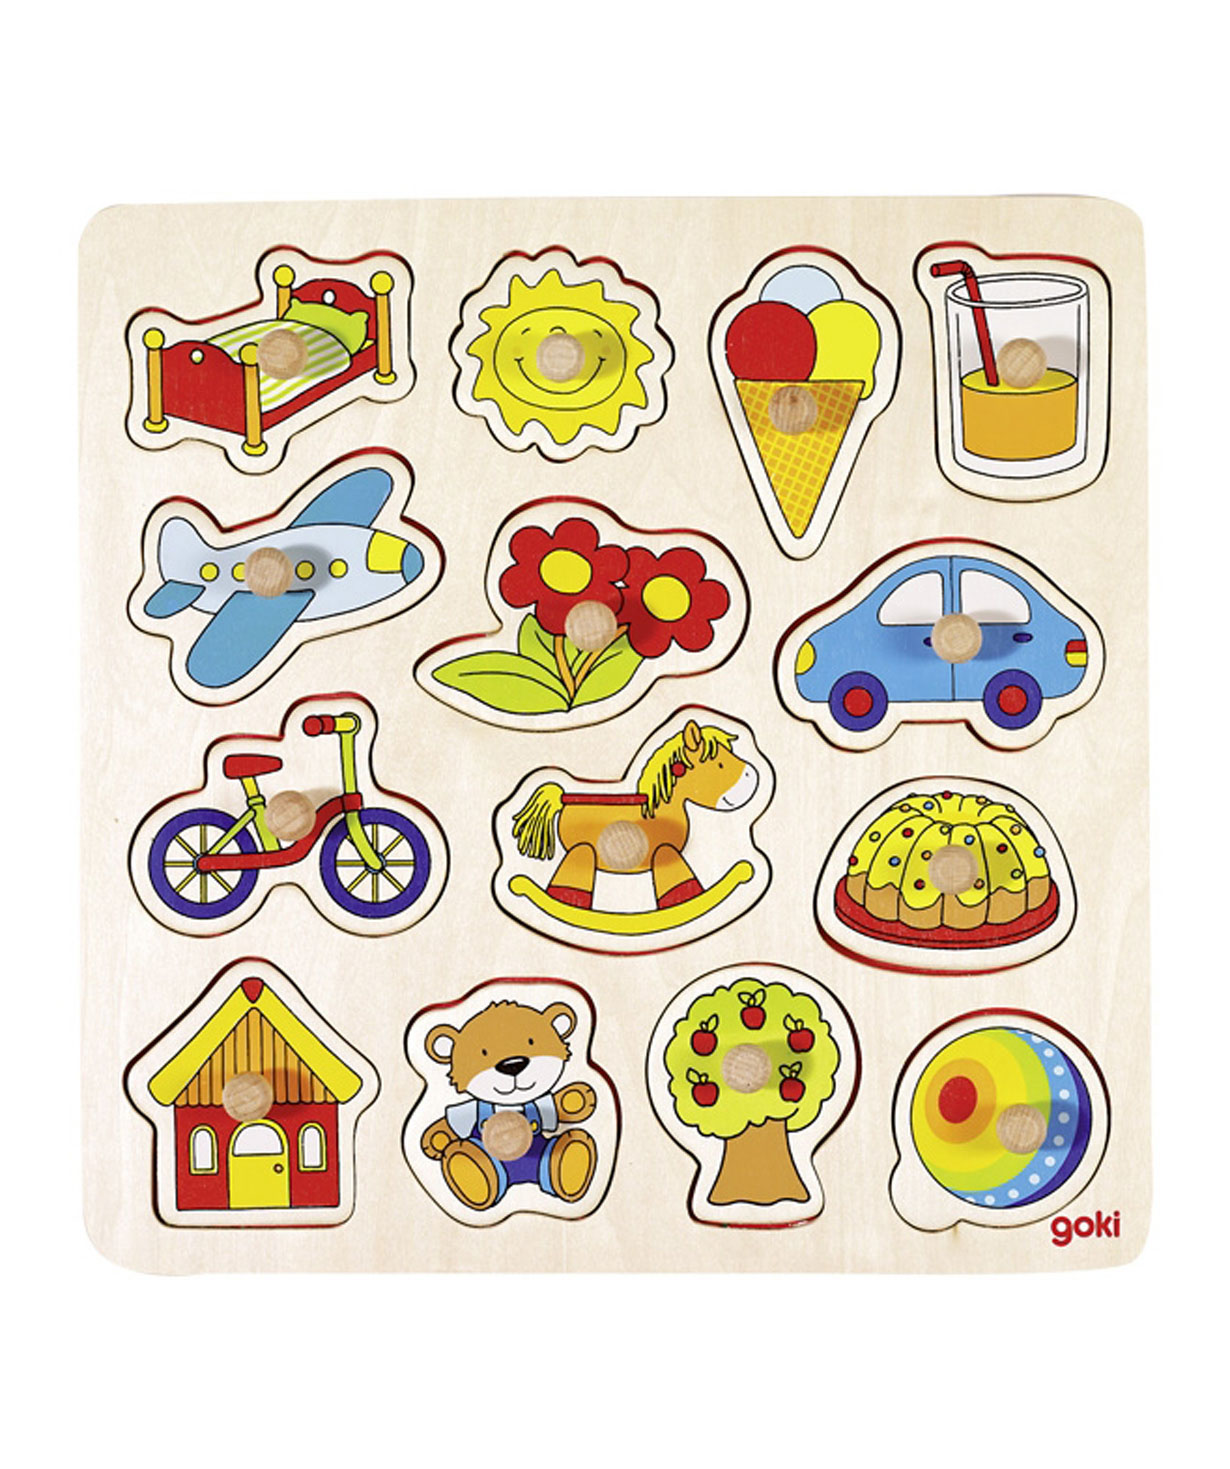 Toy `Goki Toys` puzzle ball